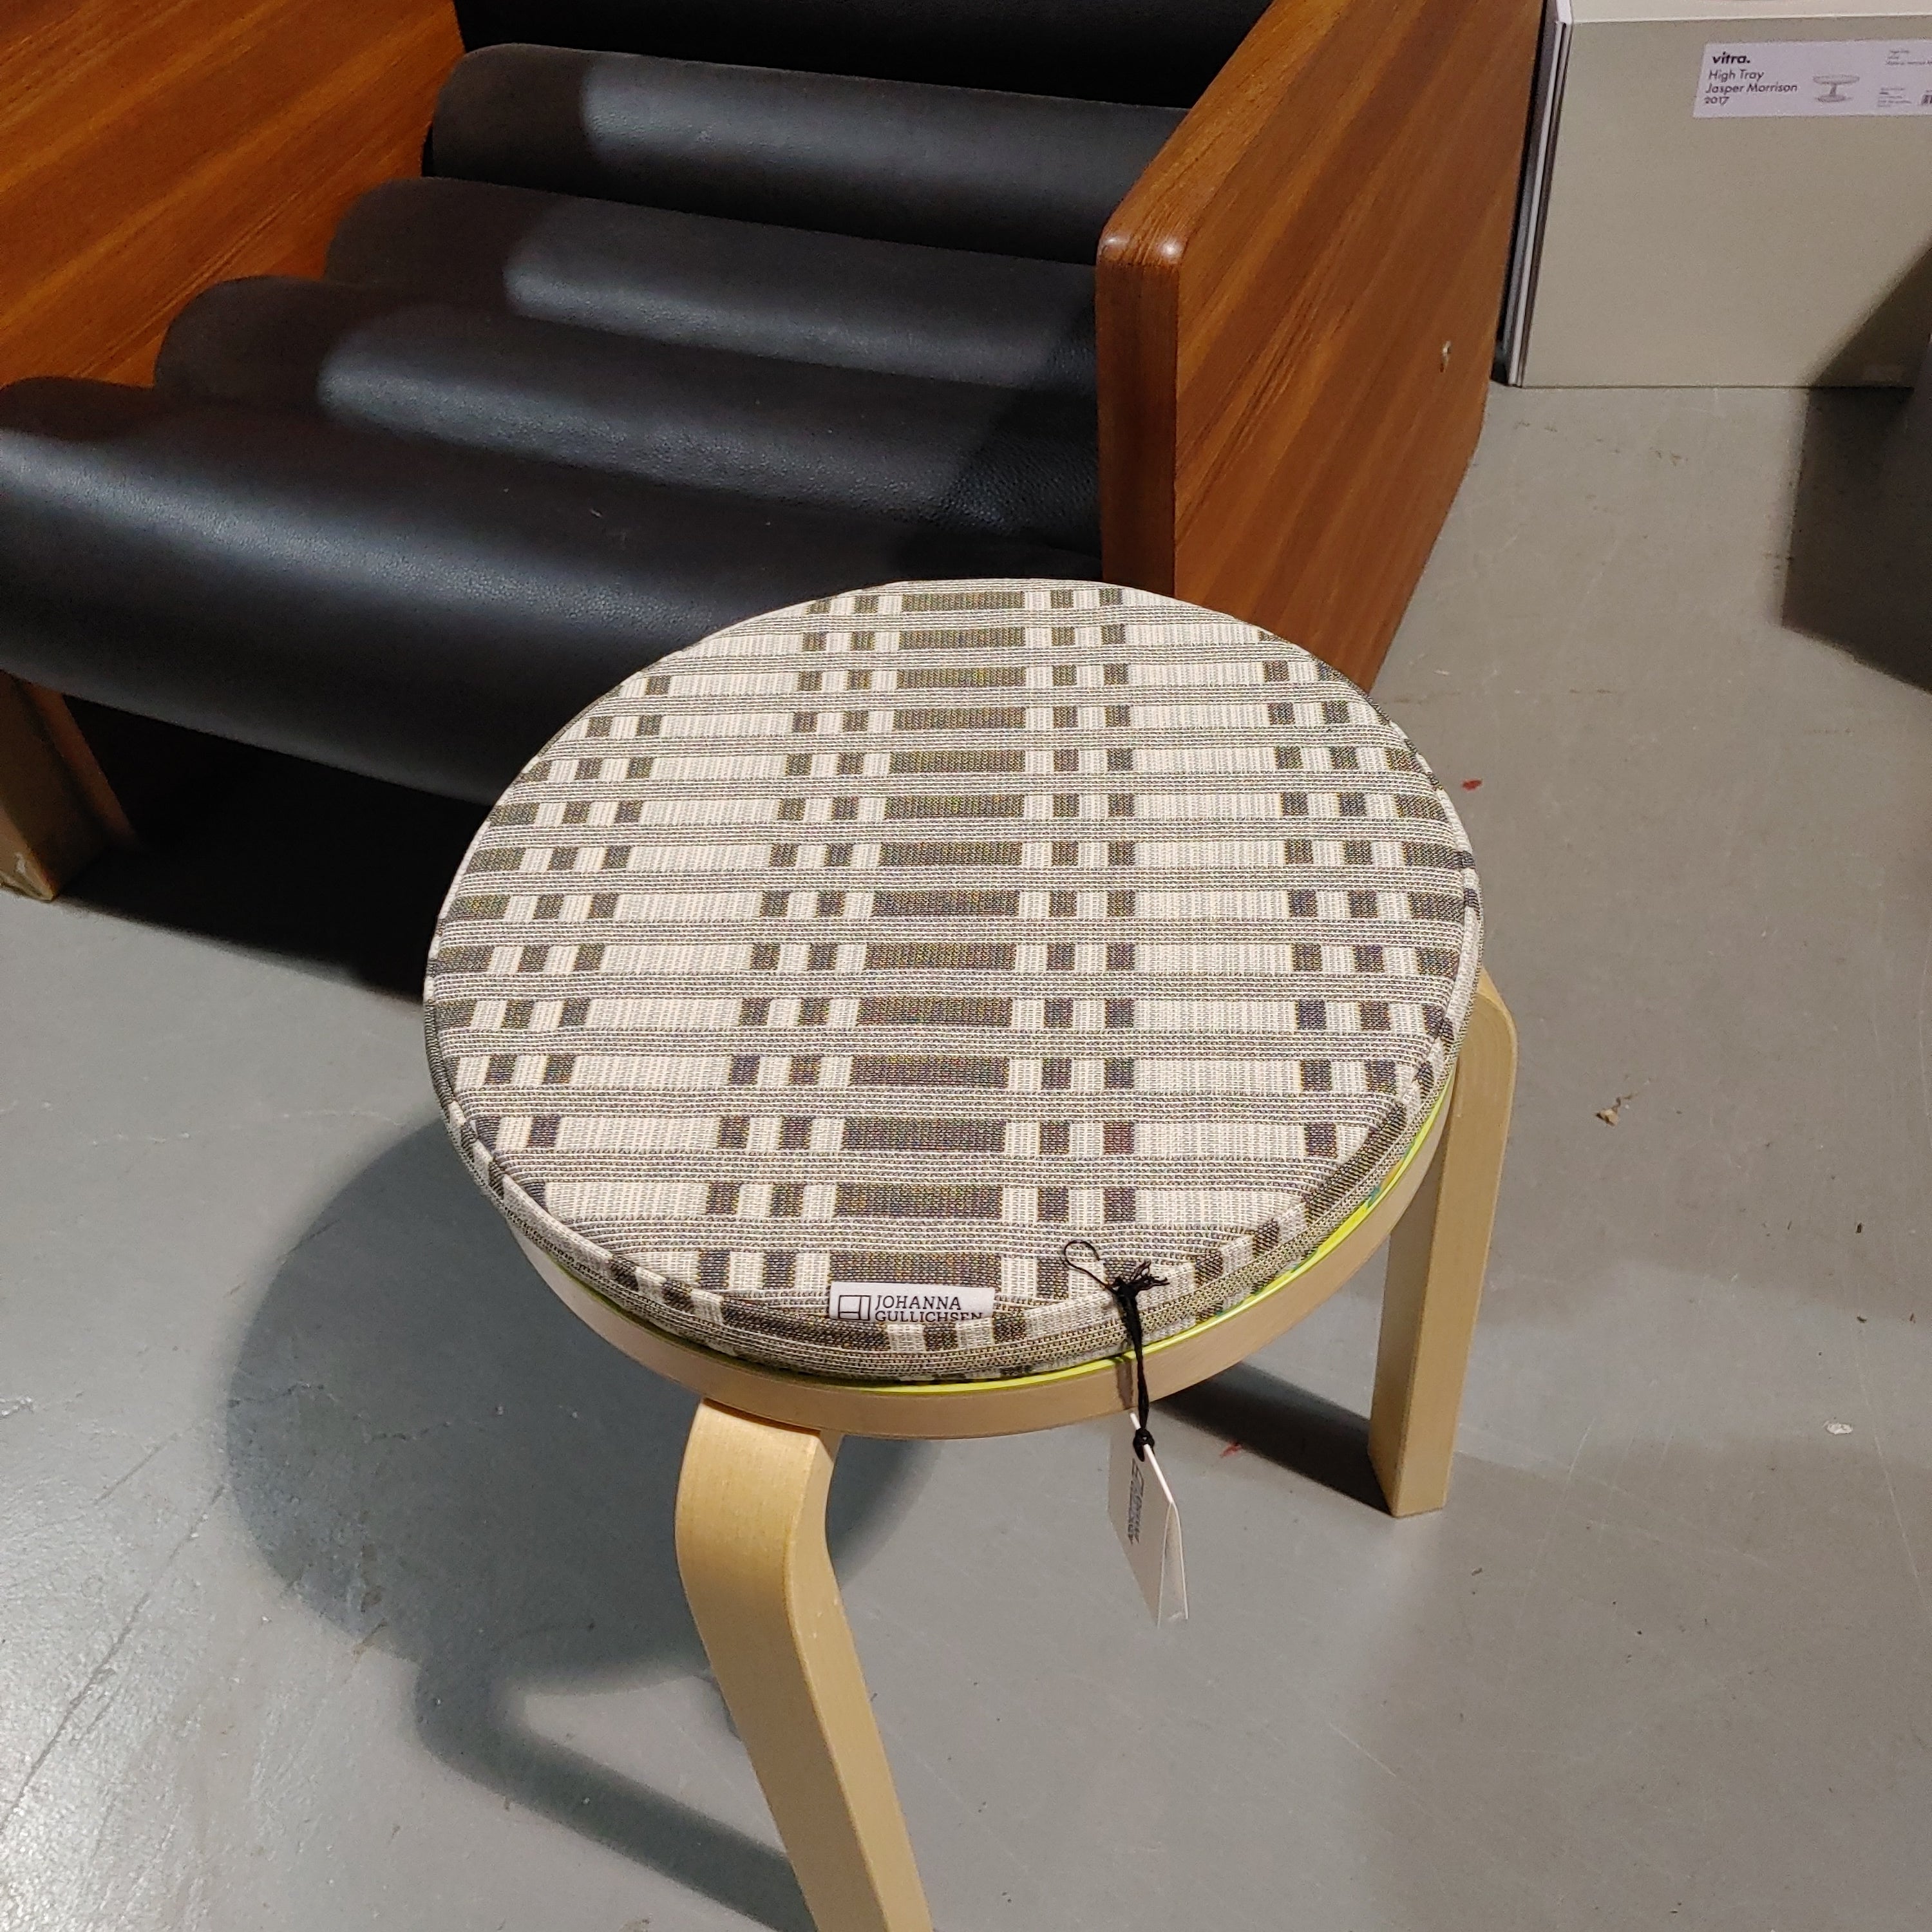 Discushion Seat cushion (Aalto stool) Tithonus Lead